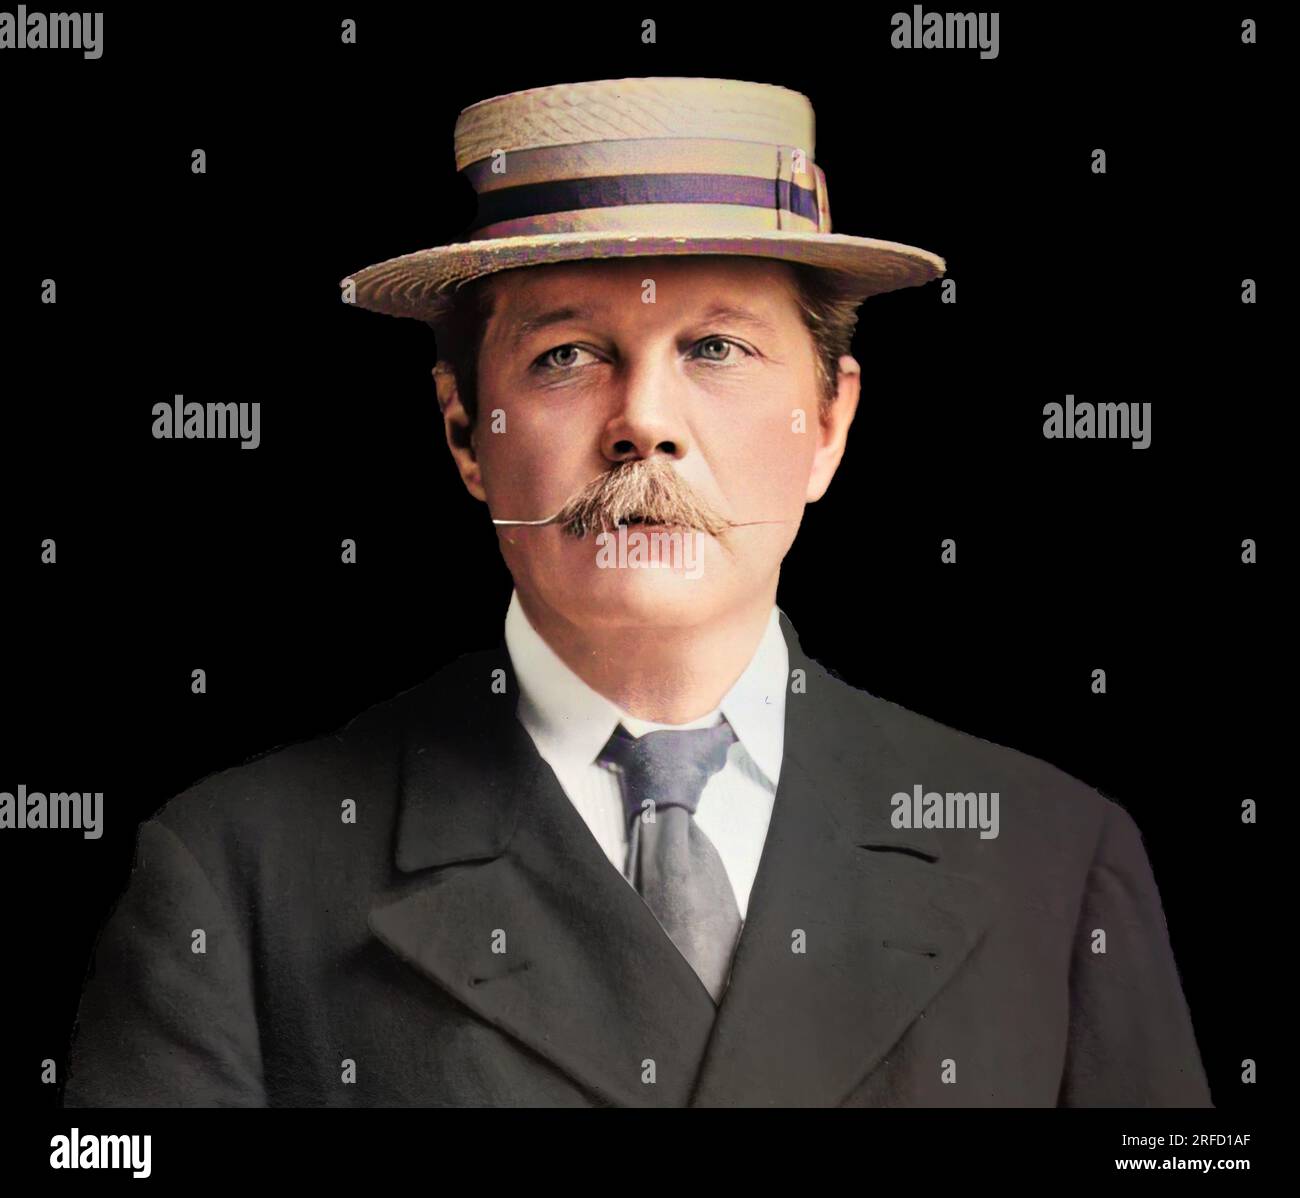 Sir Arthur Ignatius Conan Doyle (1859-1930) britischer Schriftsteller und Arzt. Er ist am besten bekannt für seine Krimis und die Figur, die er erschaffen hat, Sherlock Holmes. Stockfoto